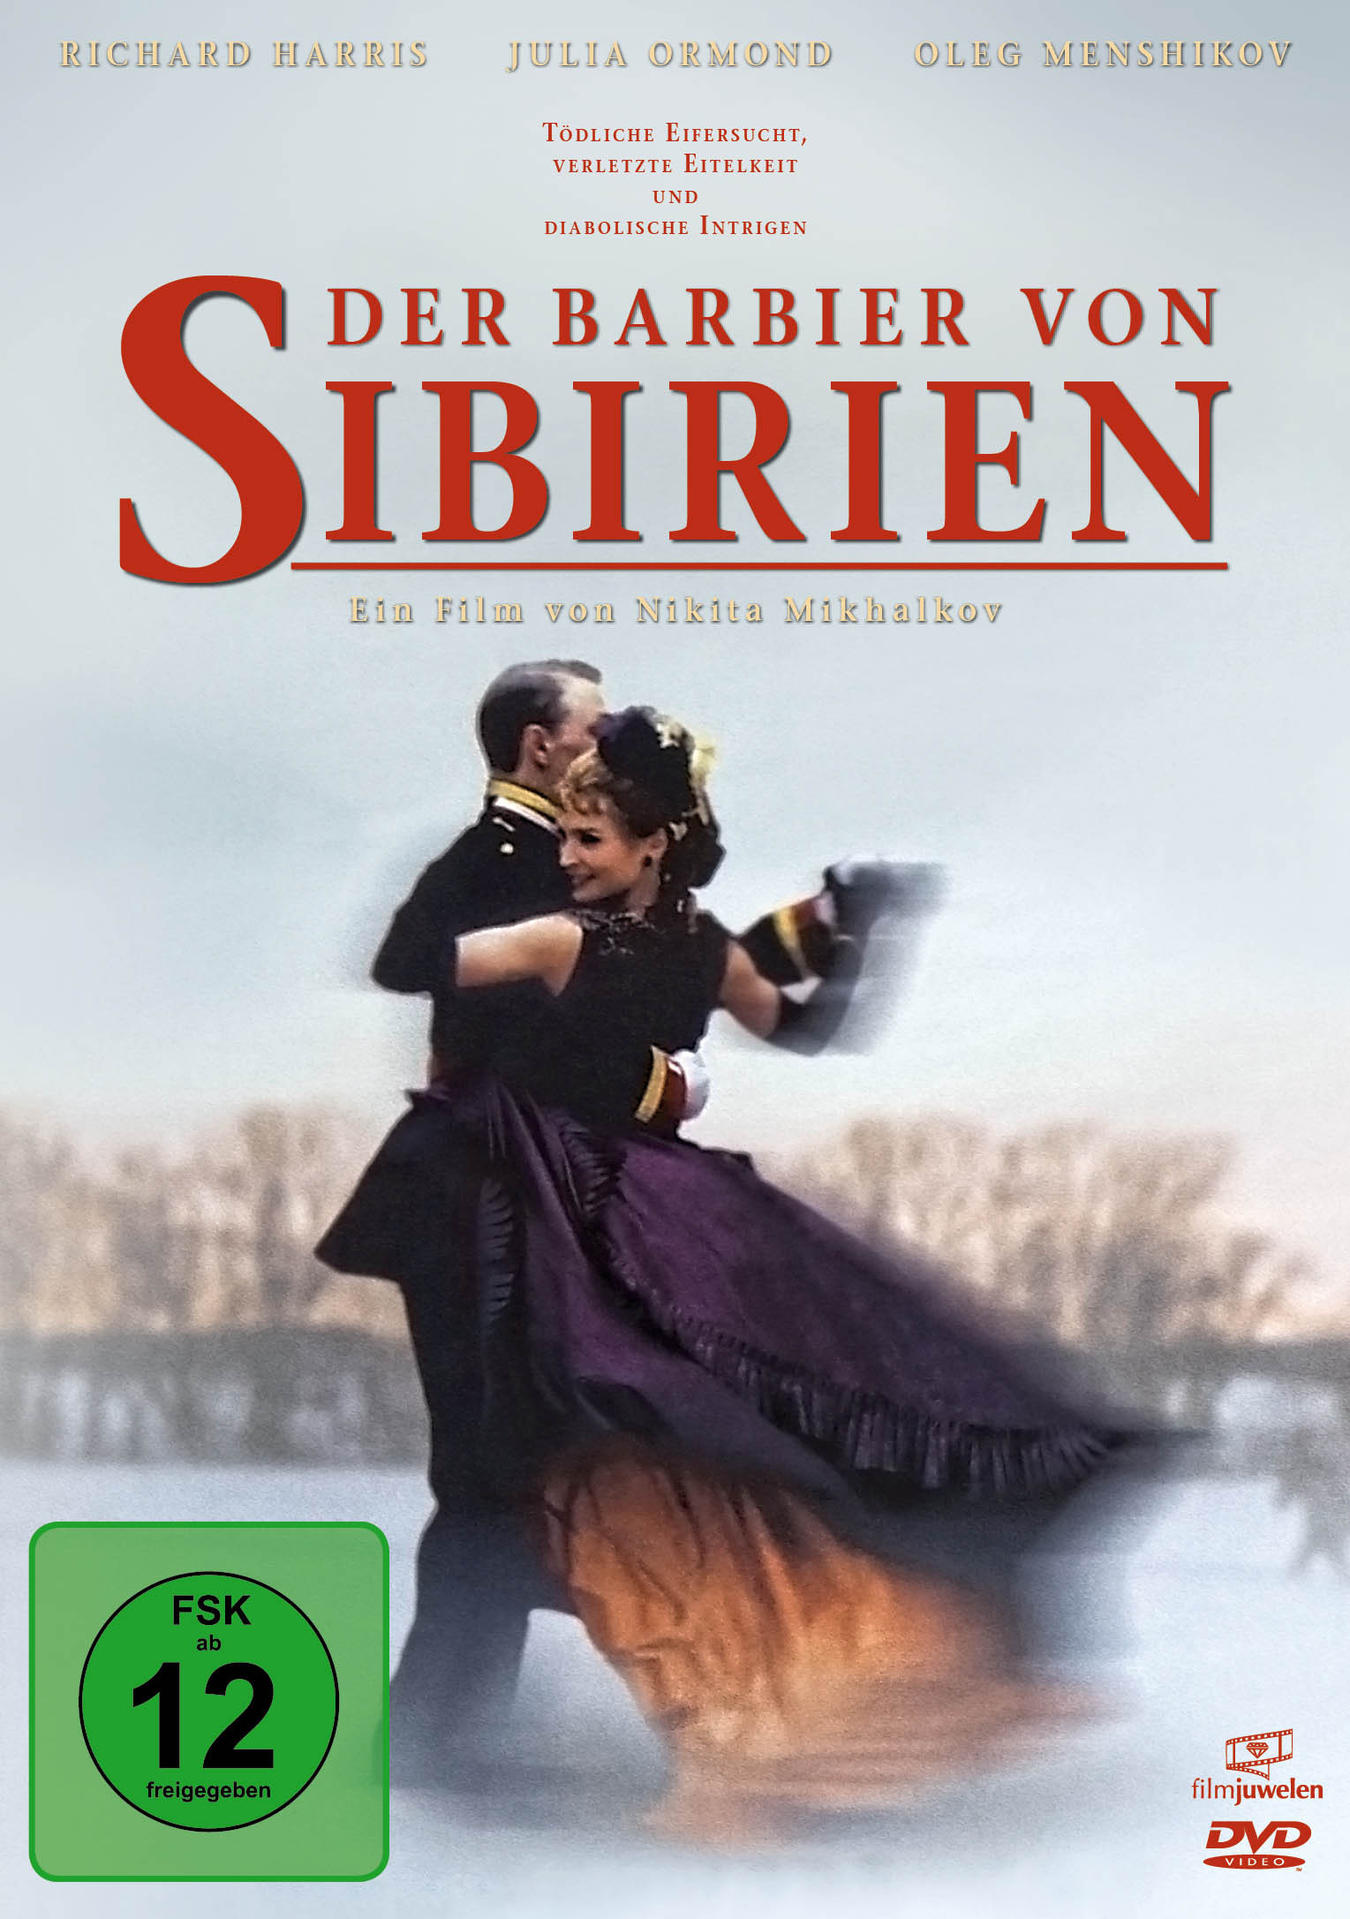 DVD Sibirien Barbier Der von